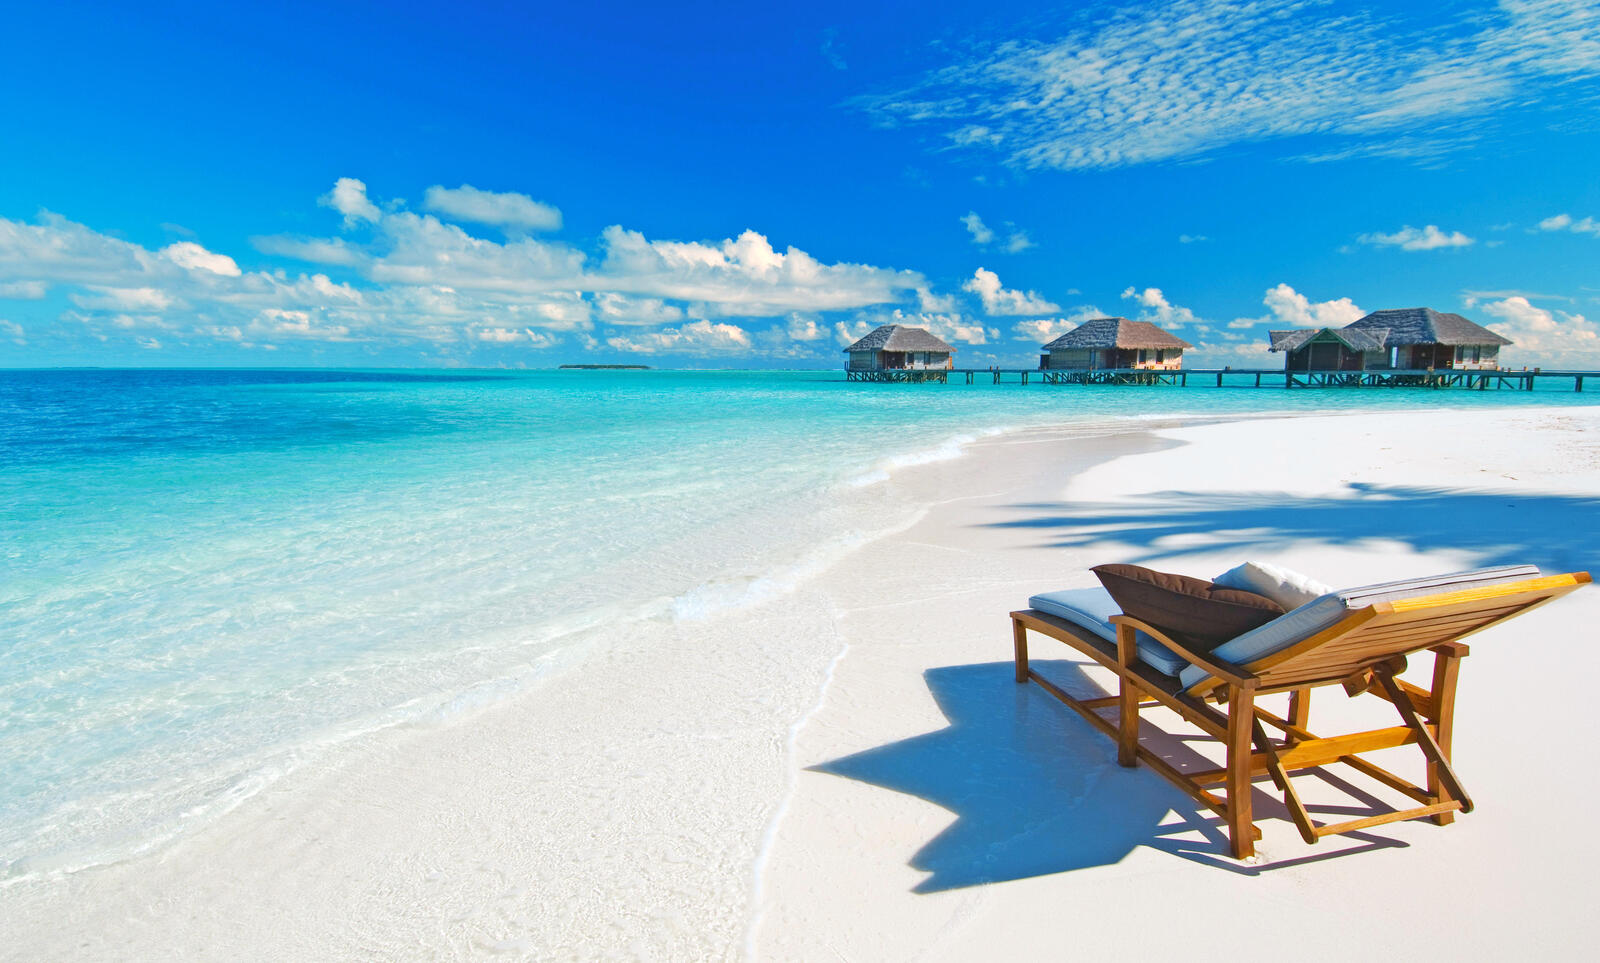 Обои Мальдивы Остров море на рабочий стол